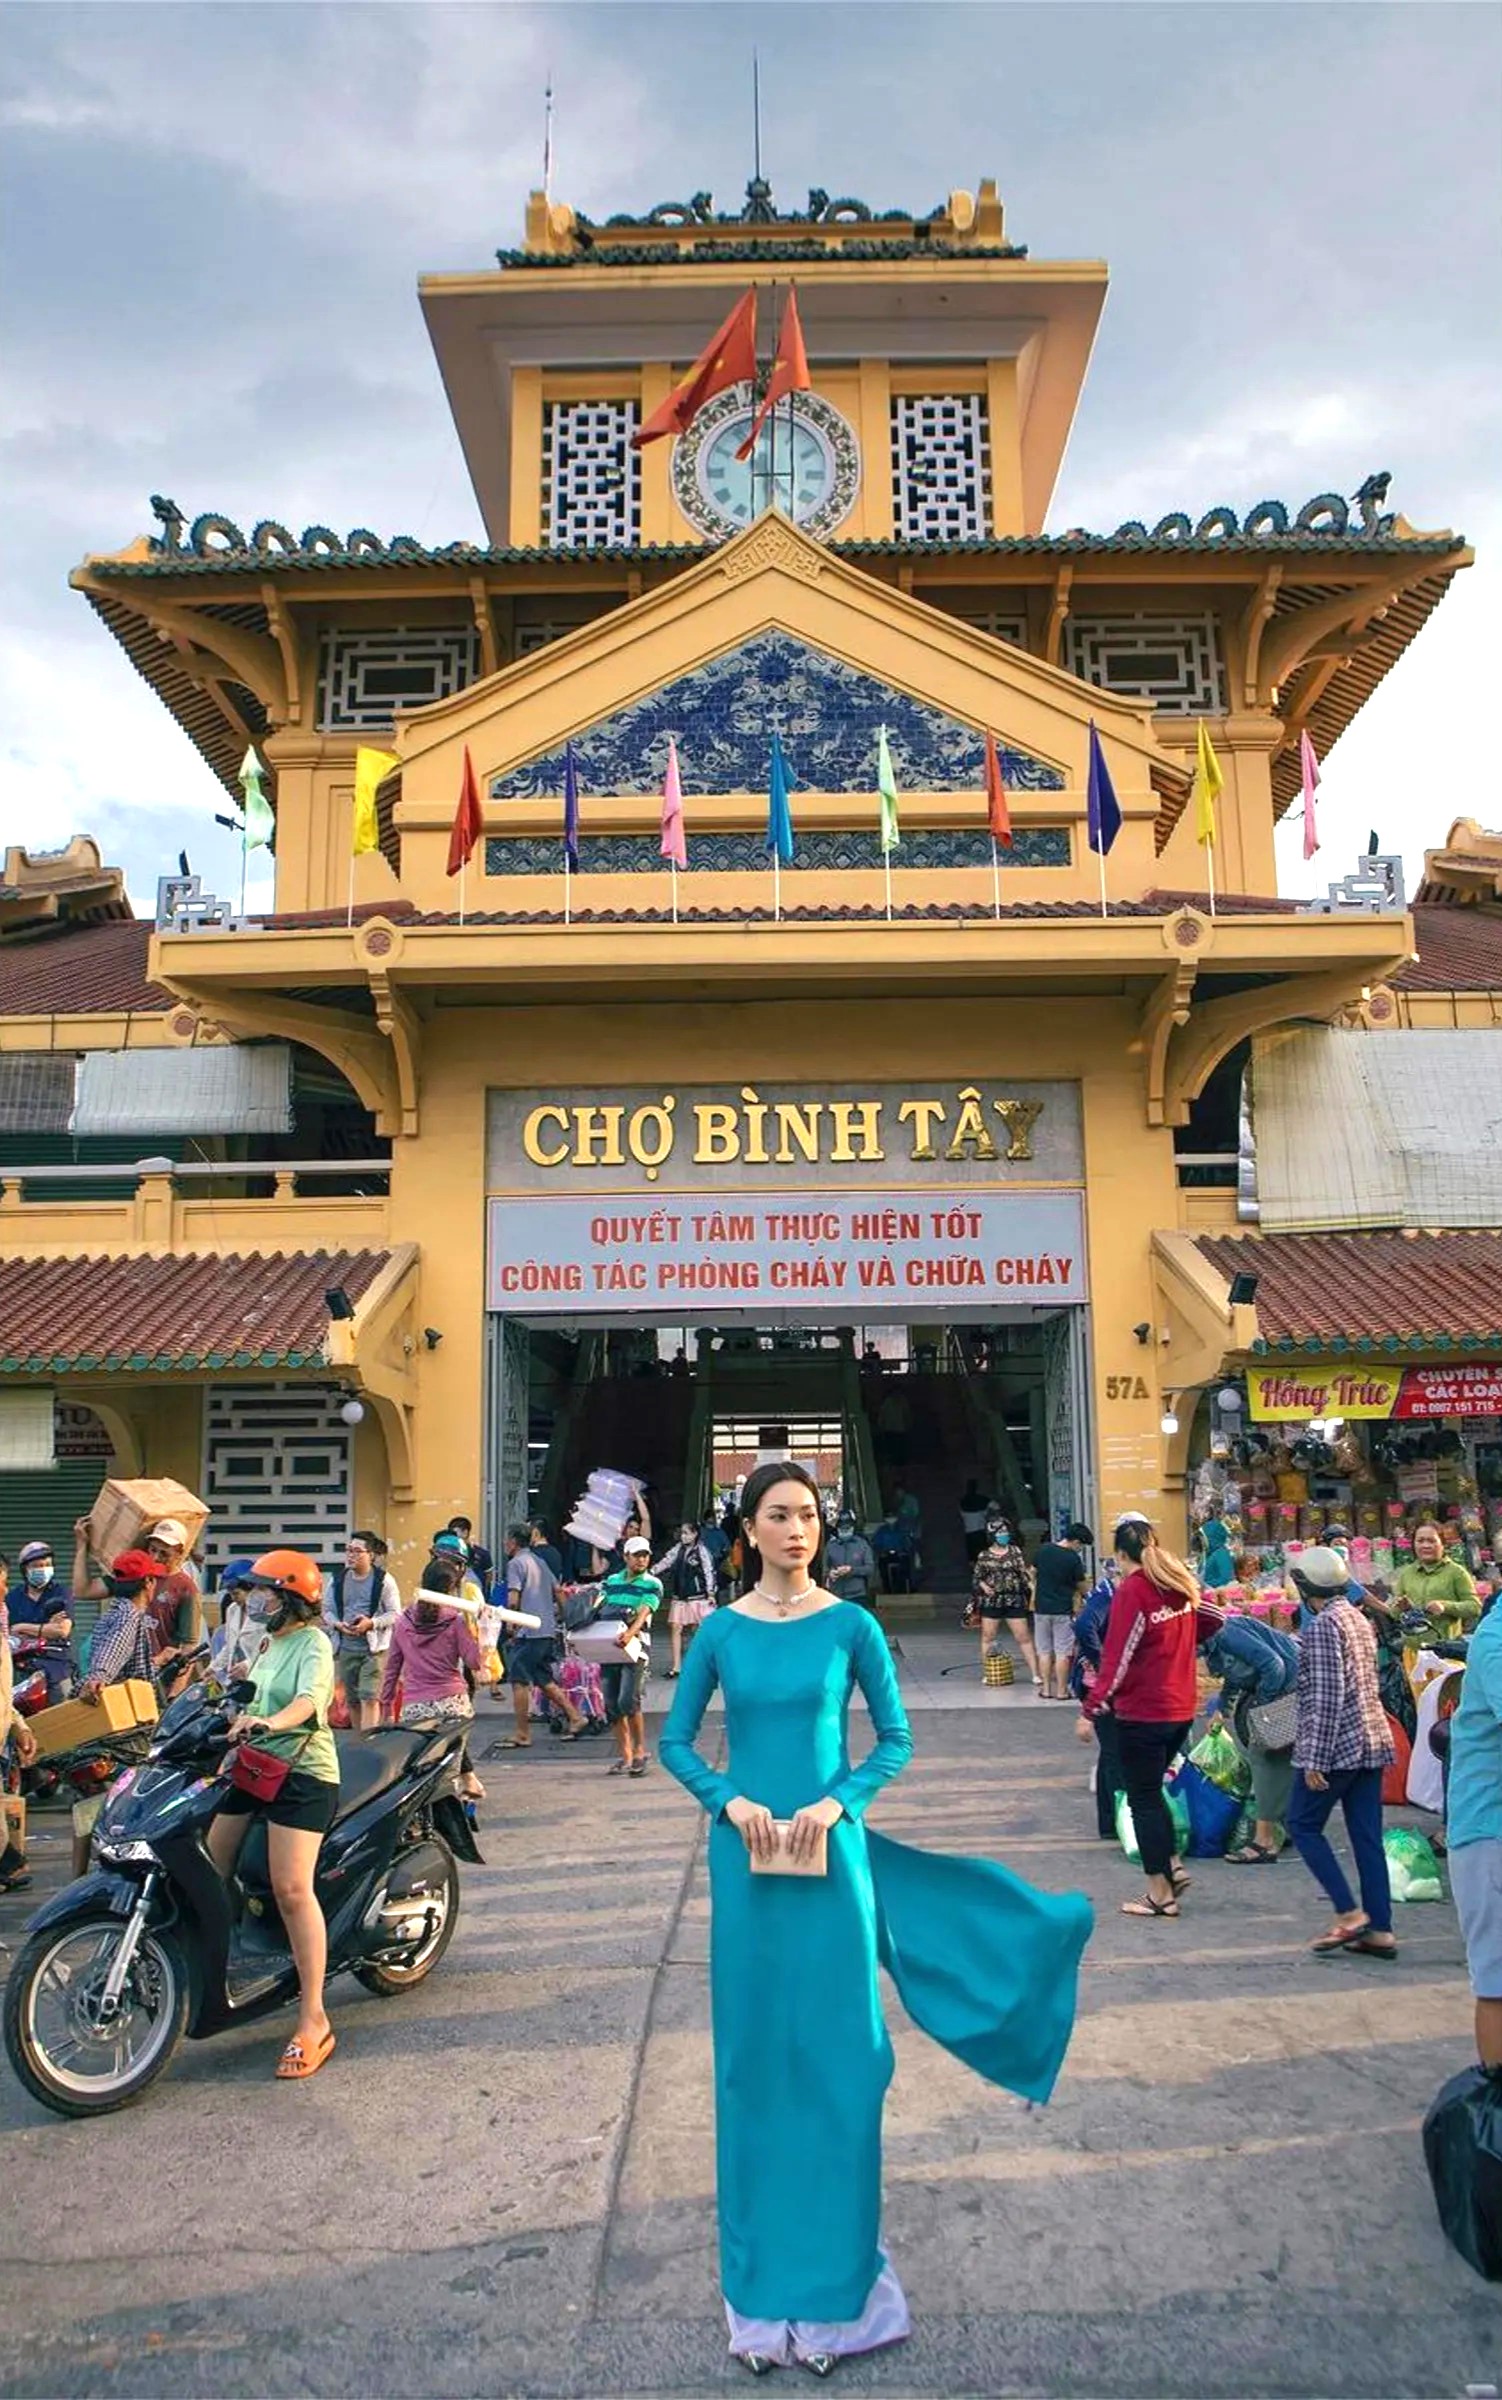 Vi vu chợ Bình Tây: ngôi chợ cổ lớn nhất Sài Thành 21